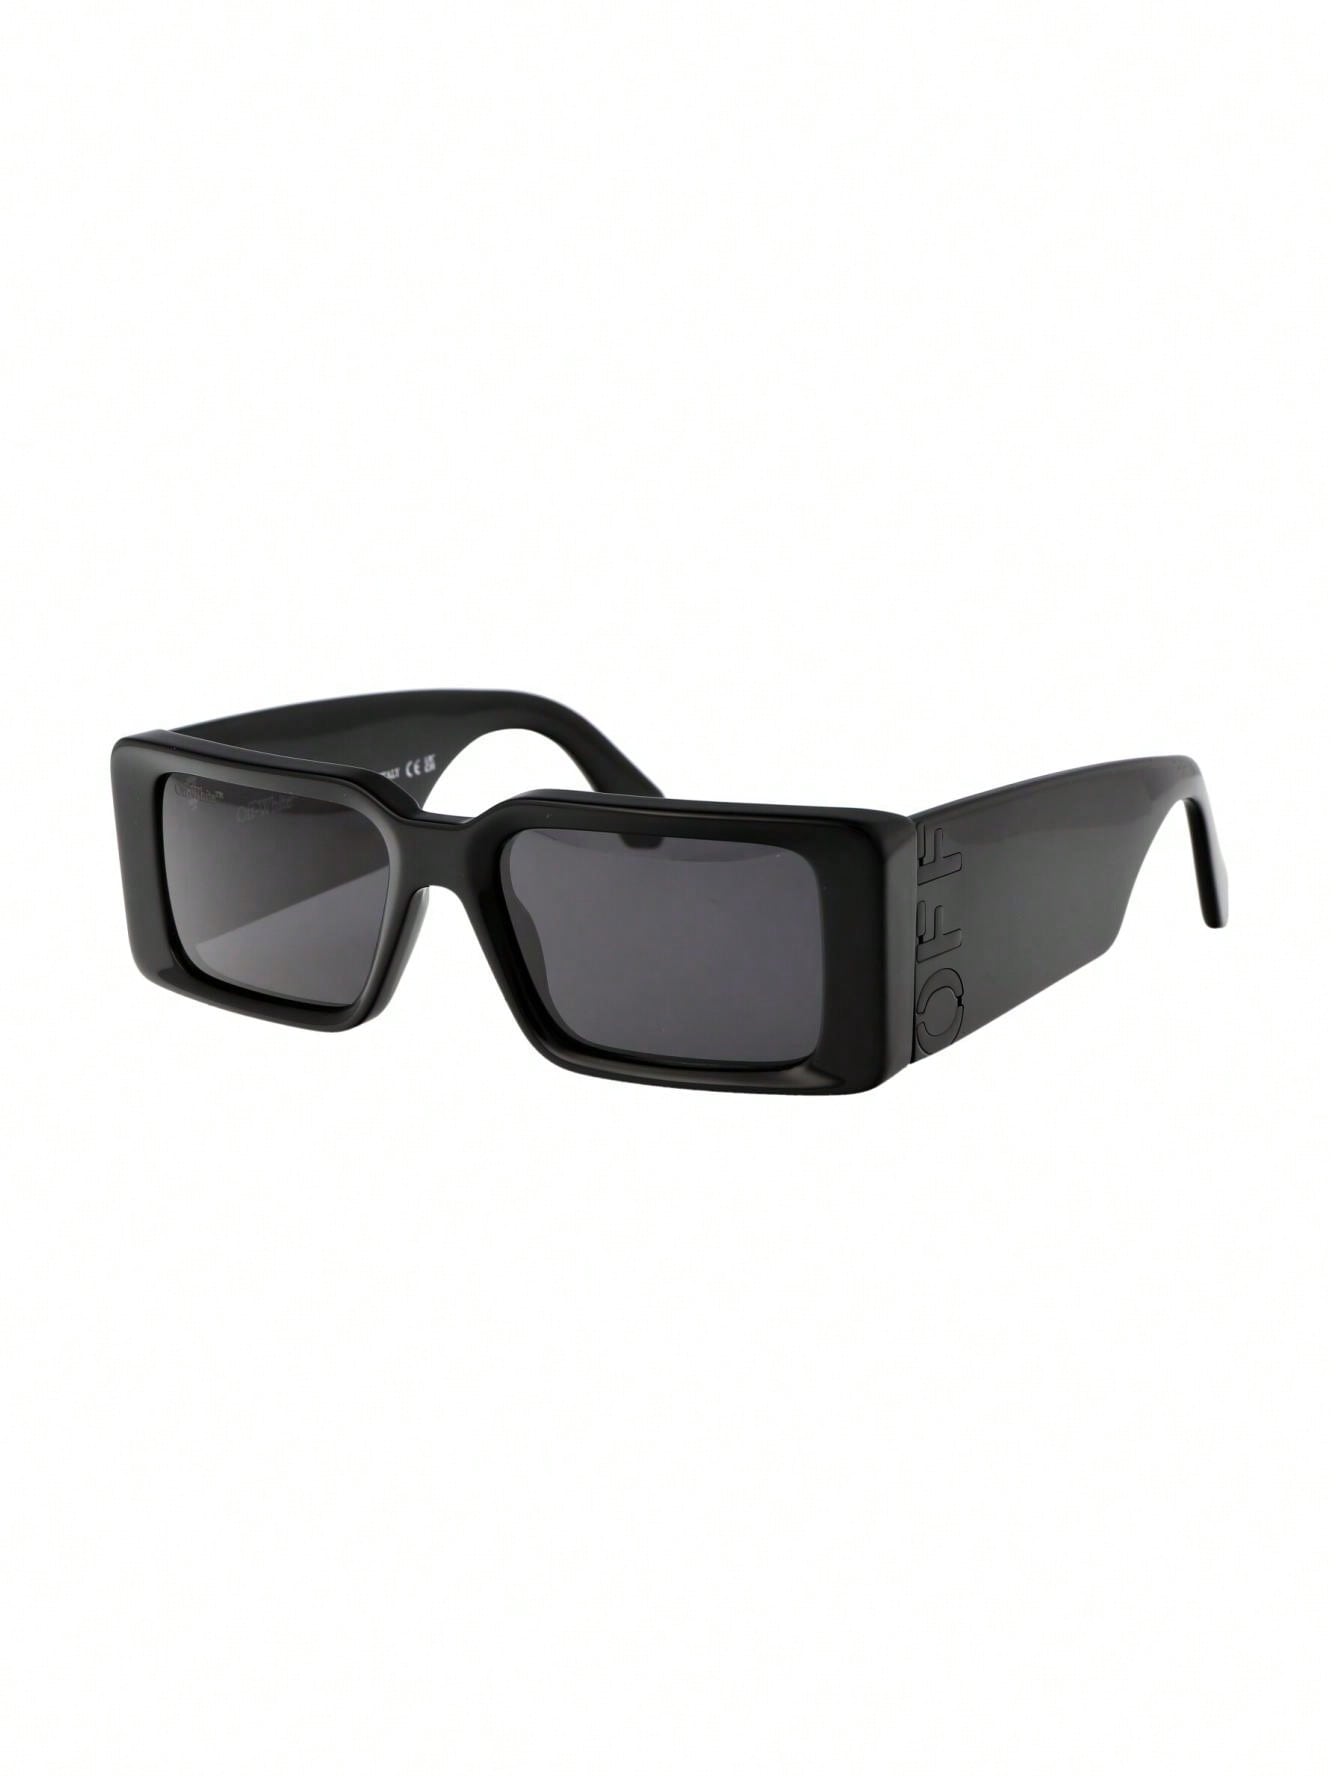 мужские солнцезащитные очки off white черные oeri094f23pla0010107 черный Мужские солнцезащитные очки Off-White СЕРЫЕ OERI097F23PLA0011007, серый